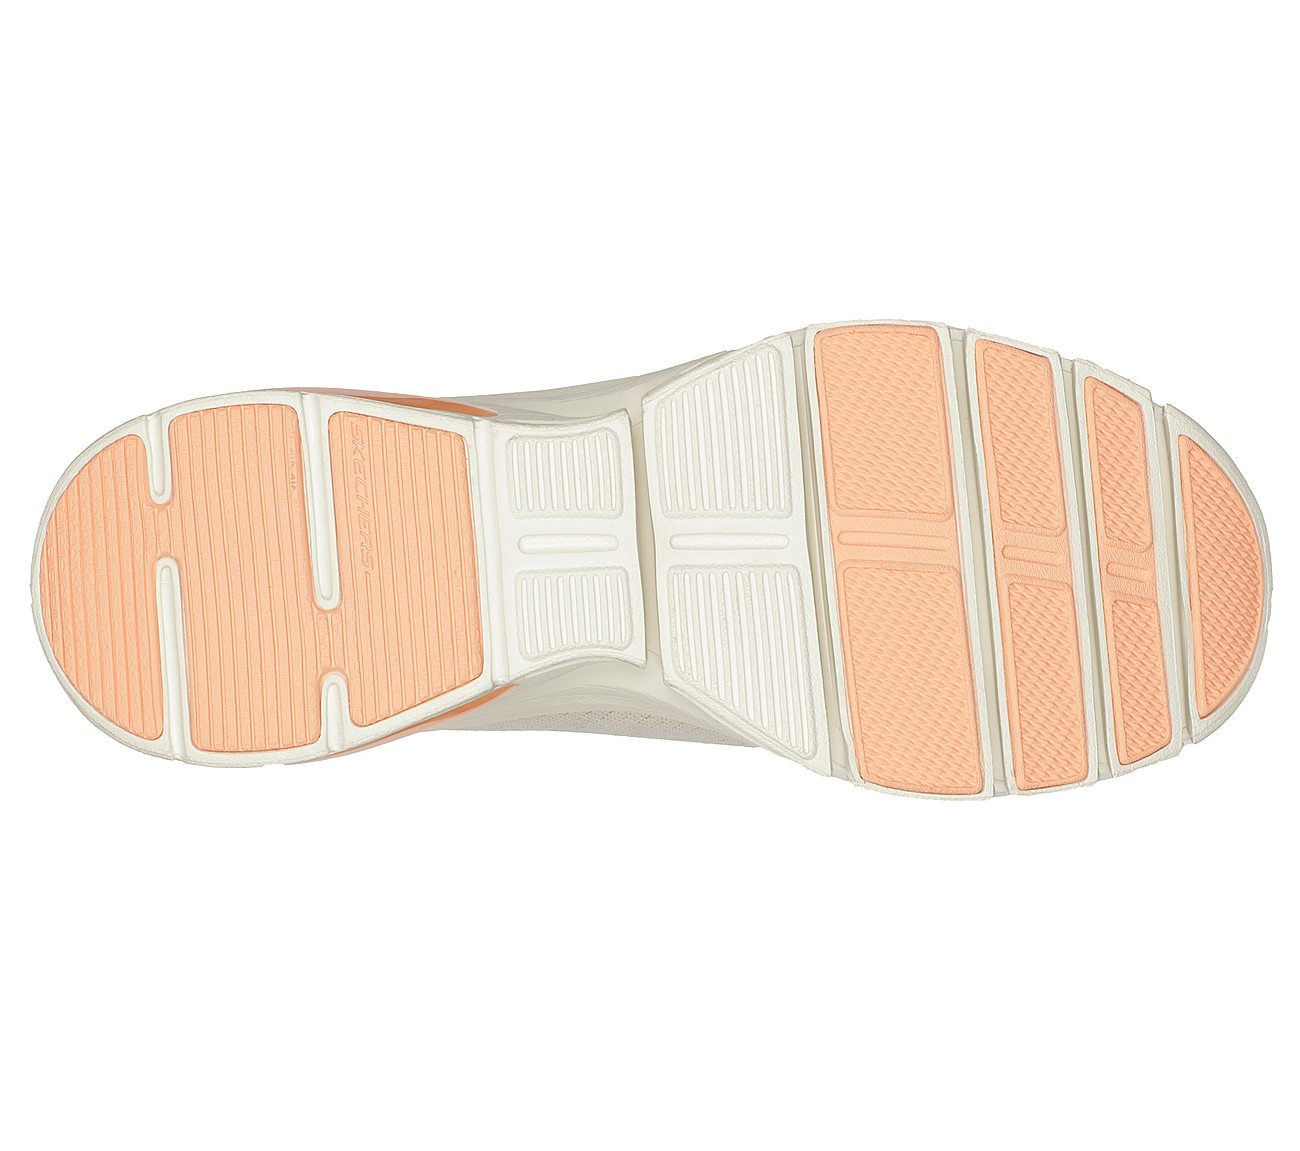 GLIDE-STEP FLEX AIR, NNATURAL/CORAL Footwear Bottom View